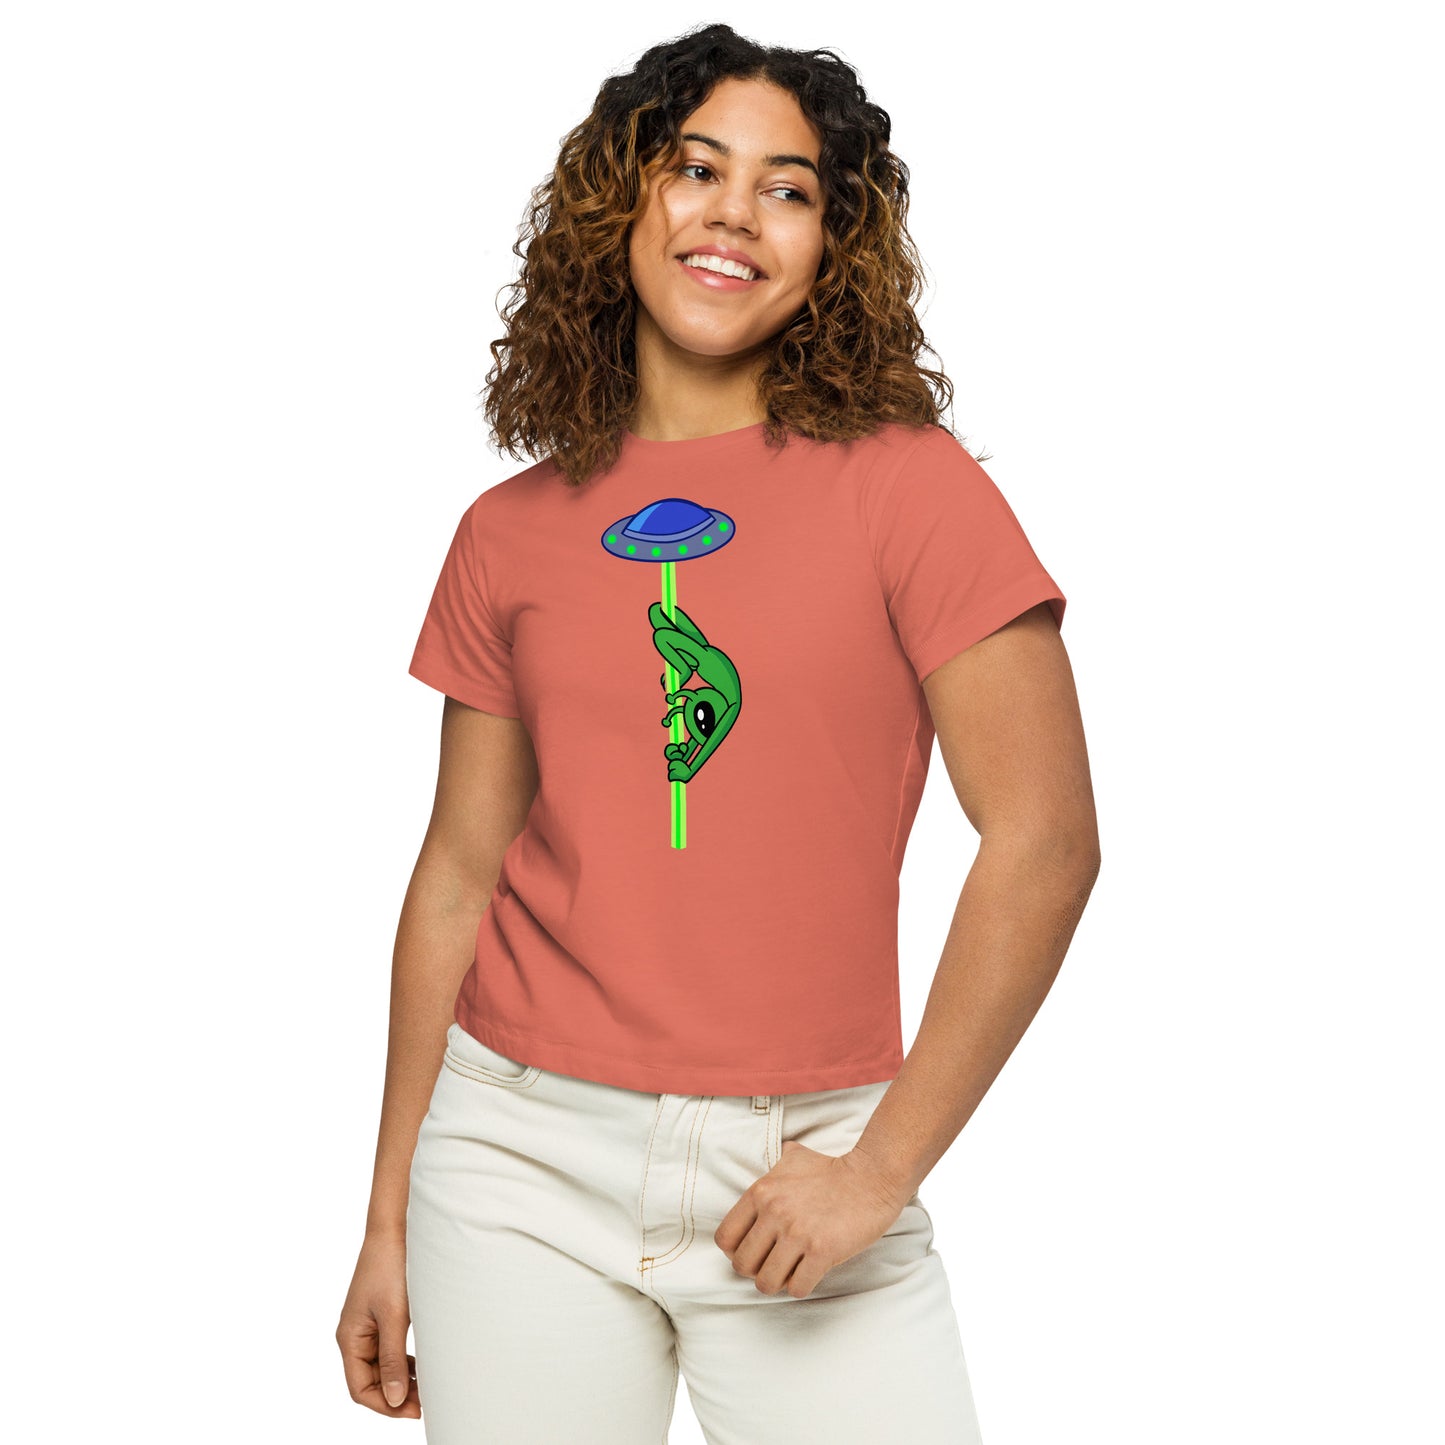 Remi Layback Alien - Women’s high-waisted t-shirt